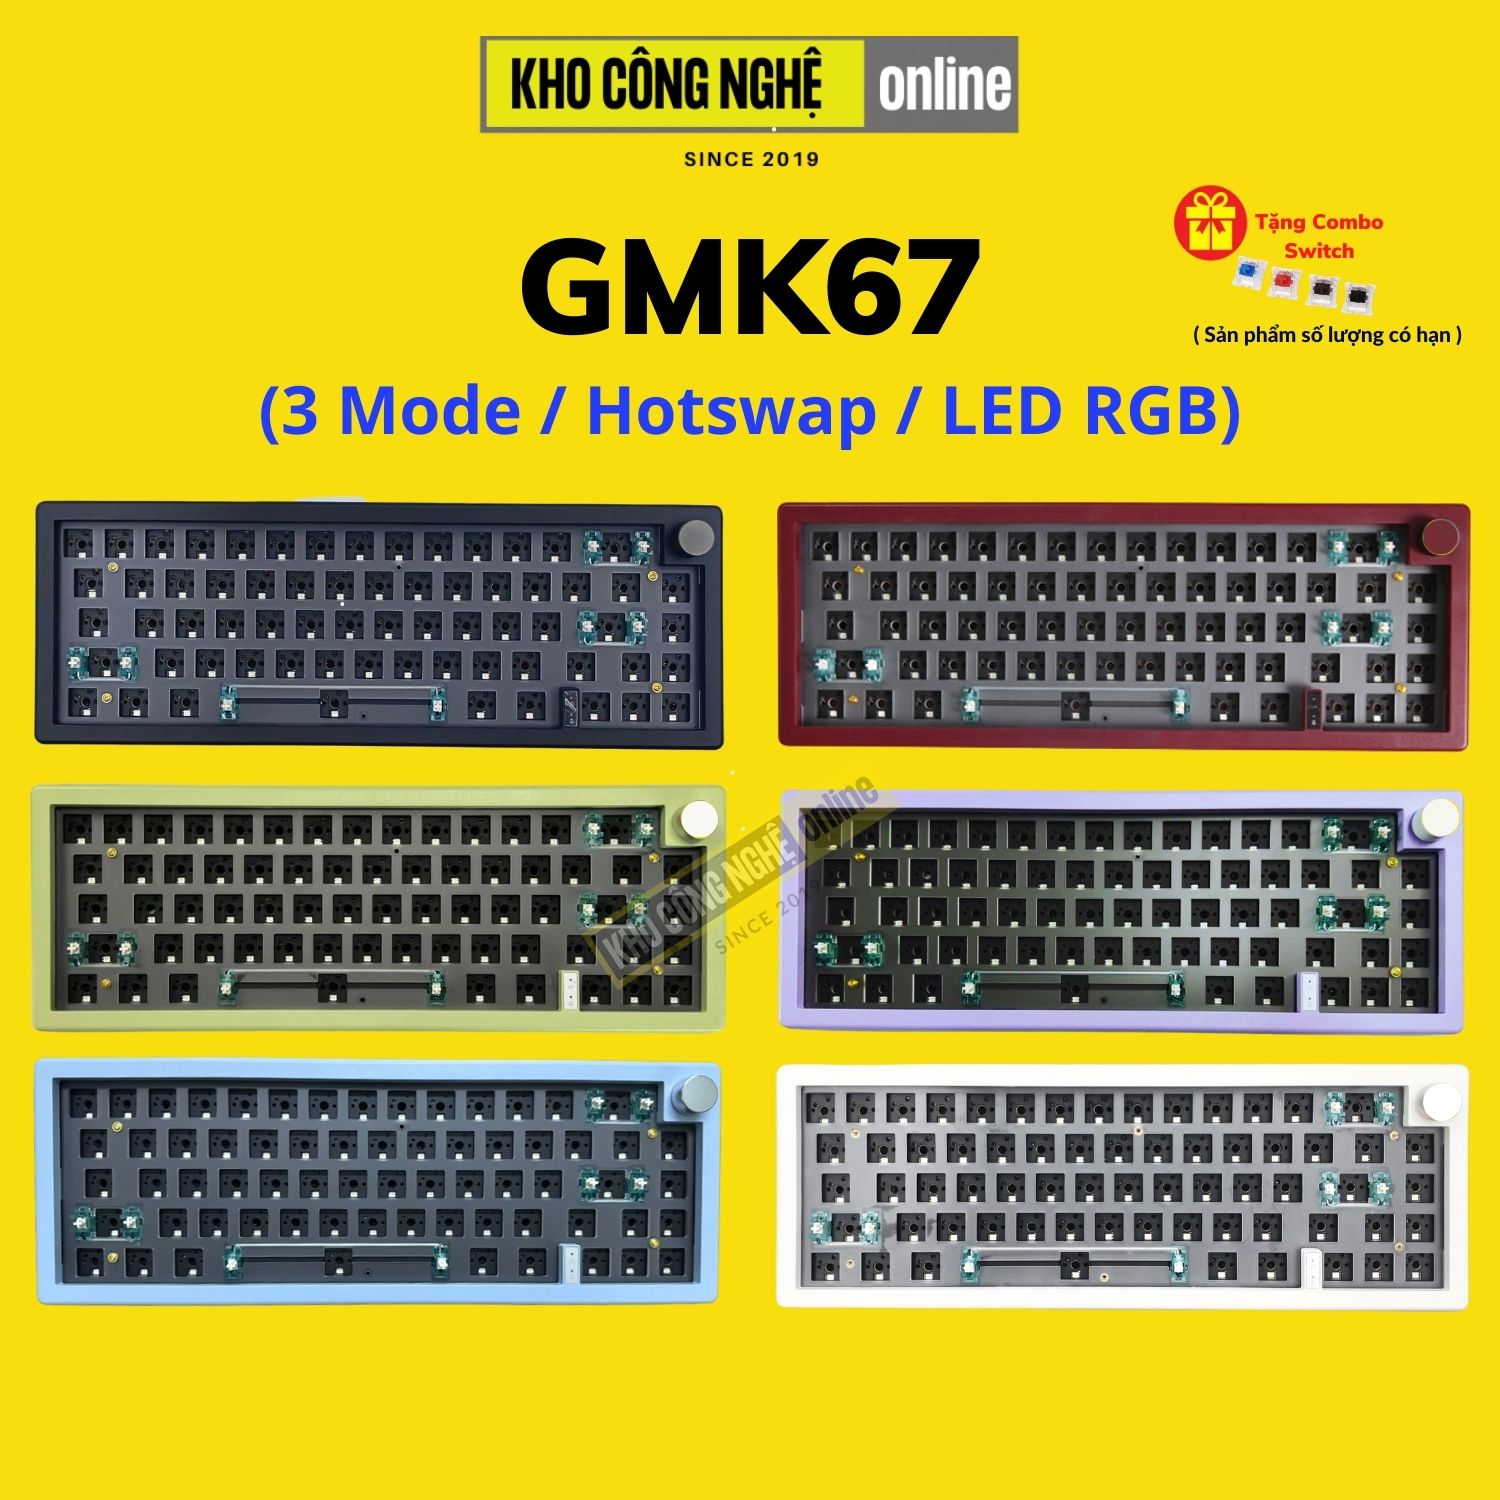 Kit GMK67 - Kit bàn phím cơ không dây GMK67 Mạch Xuôi / Gasket Mount (Bluetooth 5.0 / Wireless 2.4Ghz / Hotswap / Led RGB)